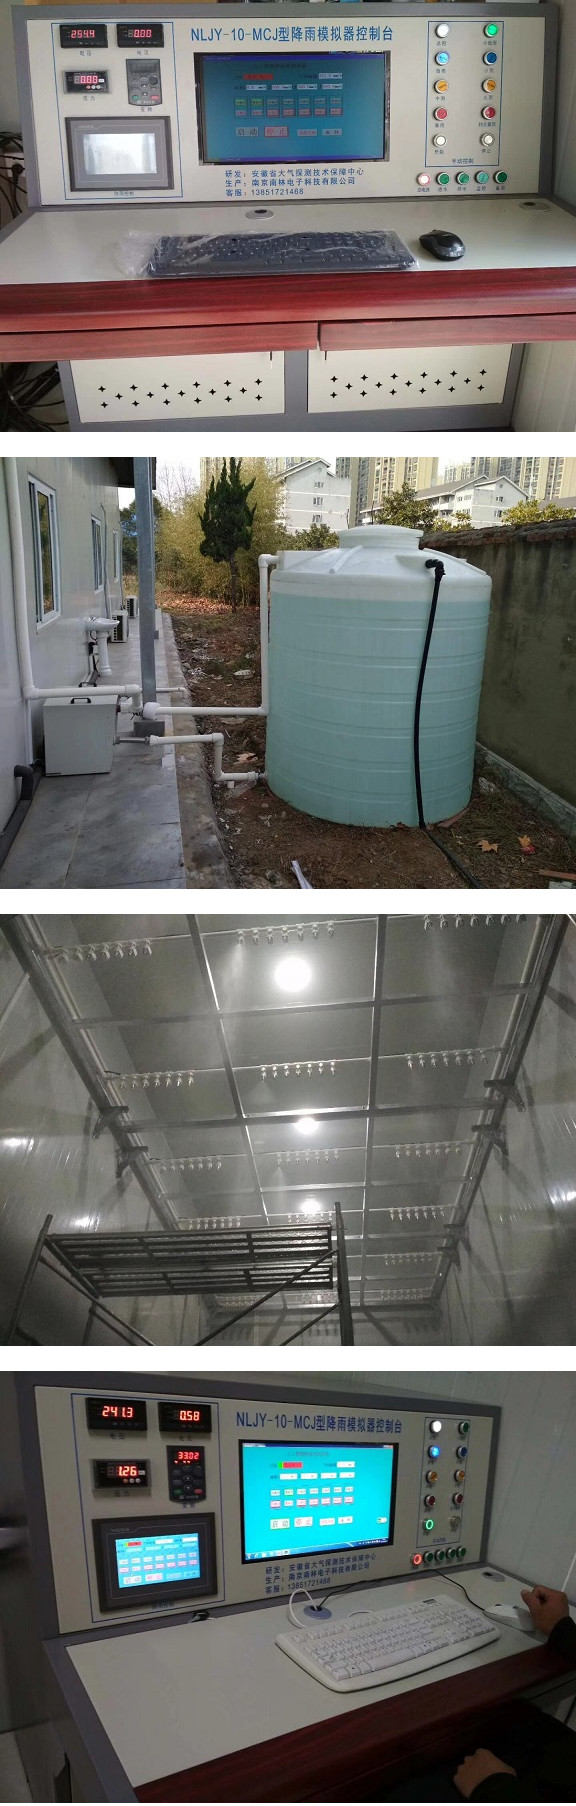 安徽气象研究所大型模拟降雨系统落成并且一次性调试成功